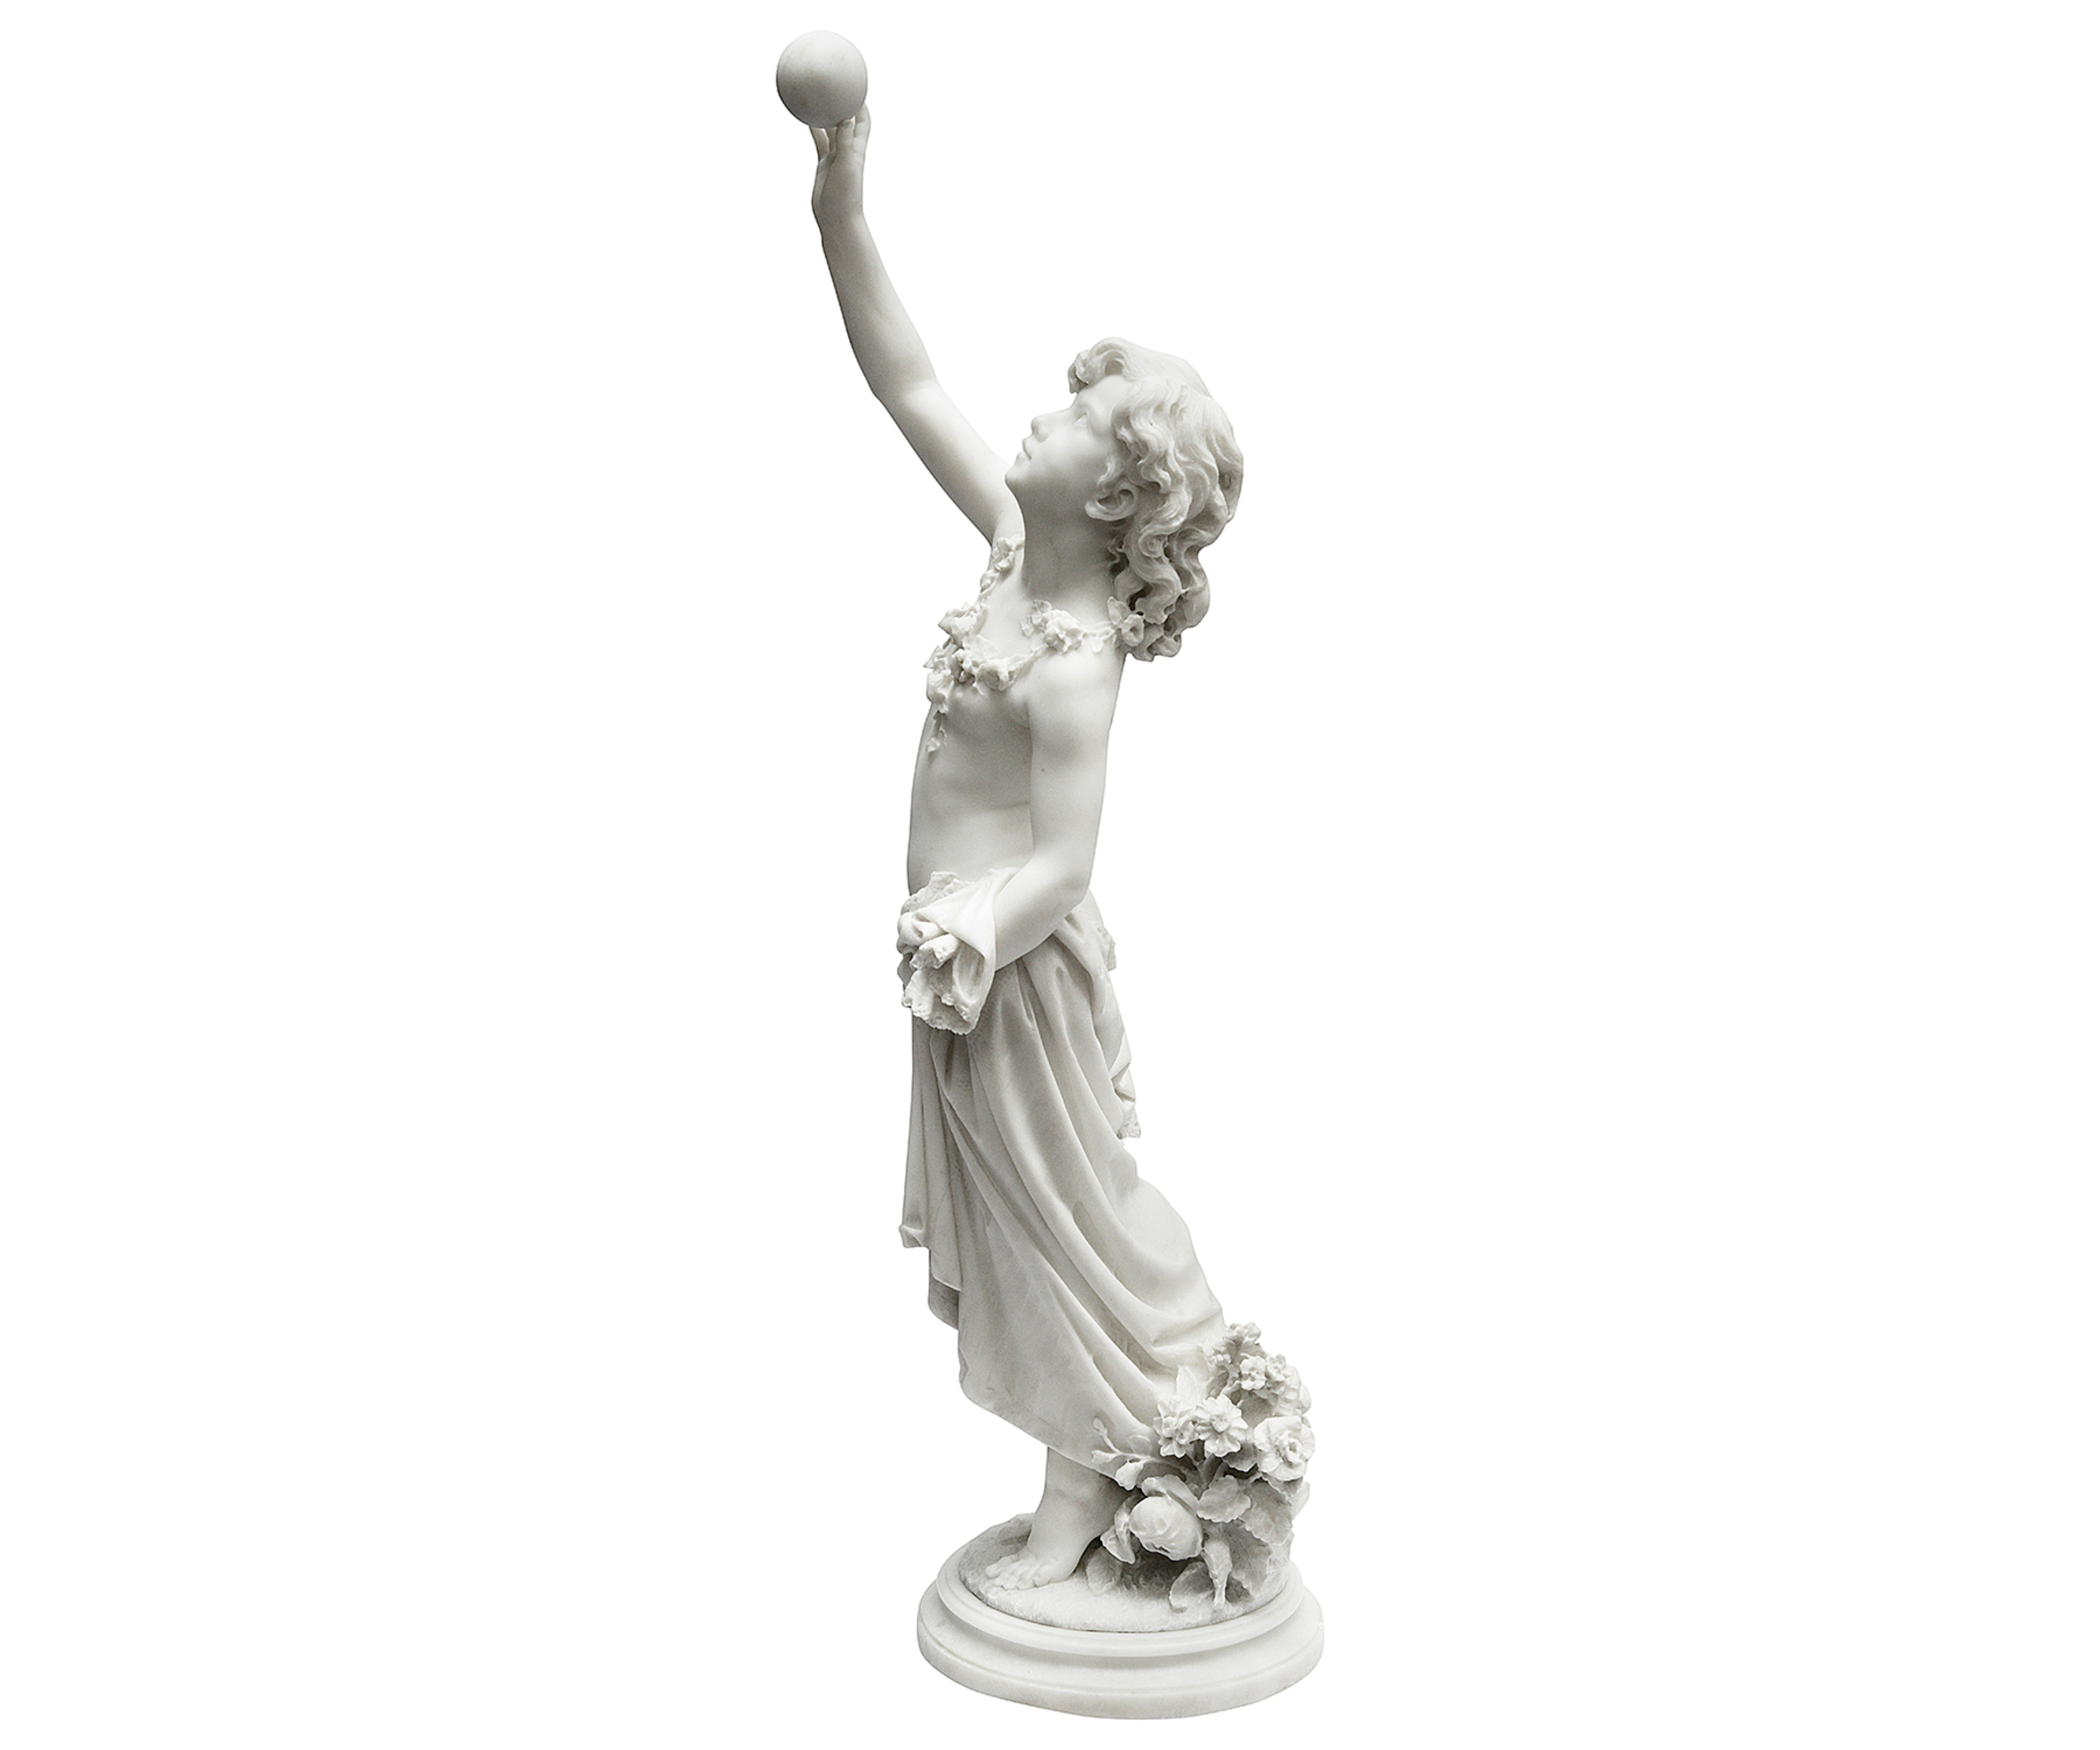 Eine hochwertige italienische Carrera-Marmorstatue aus dem 19. Jahrhundert, die ein halbnacktes junges Mädchen beim Ballspiel darstellt. Sie trägt Blumengirlanden um den Hals und blickt zum Himmel.

Gezeichnet: Donato Baraglia.
Italienisch
1849 -